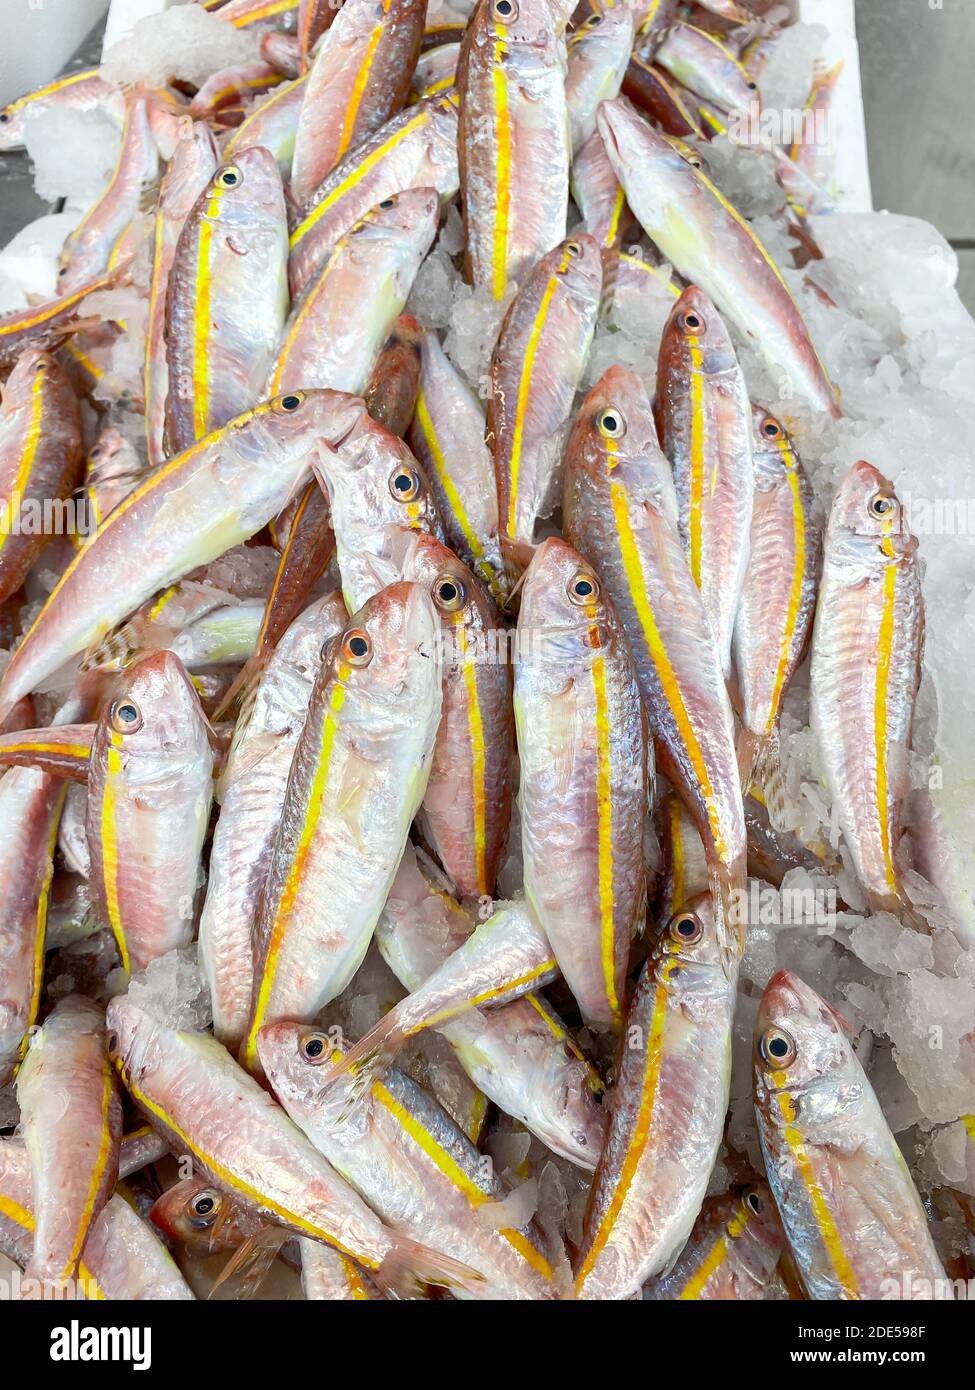 Der frische Fang des mediterranen Fisches in den Kisten auf dem Straßenmarkt. Rote Meerbarsche auf dem Markt. Stockfoto